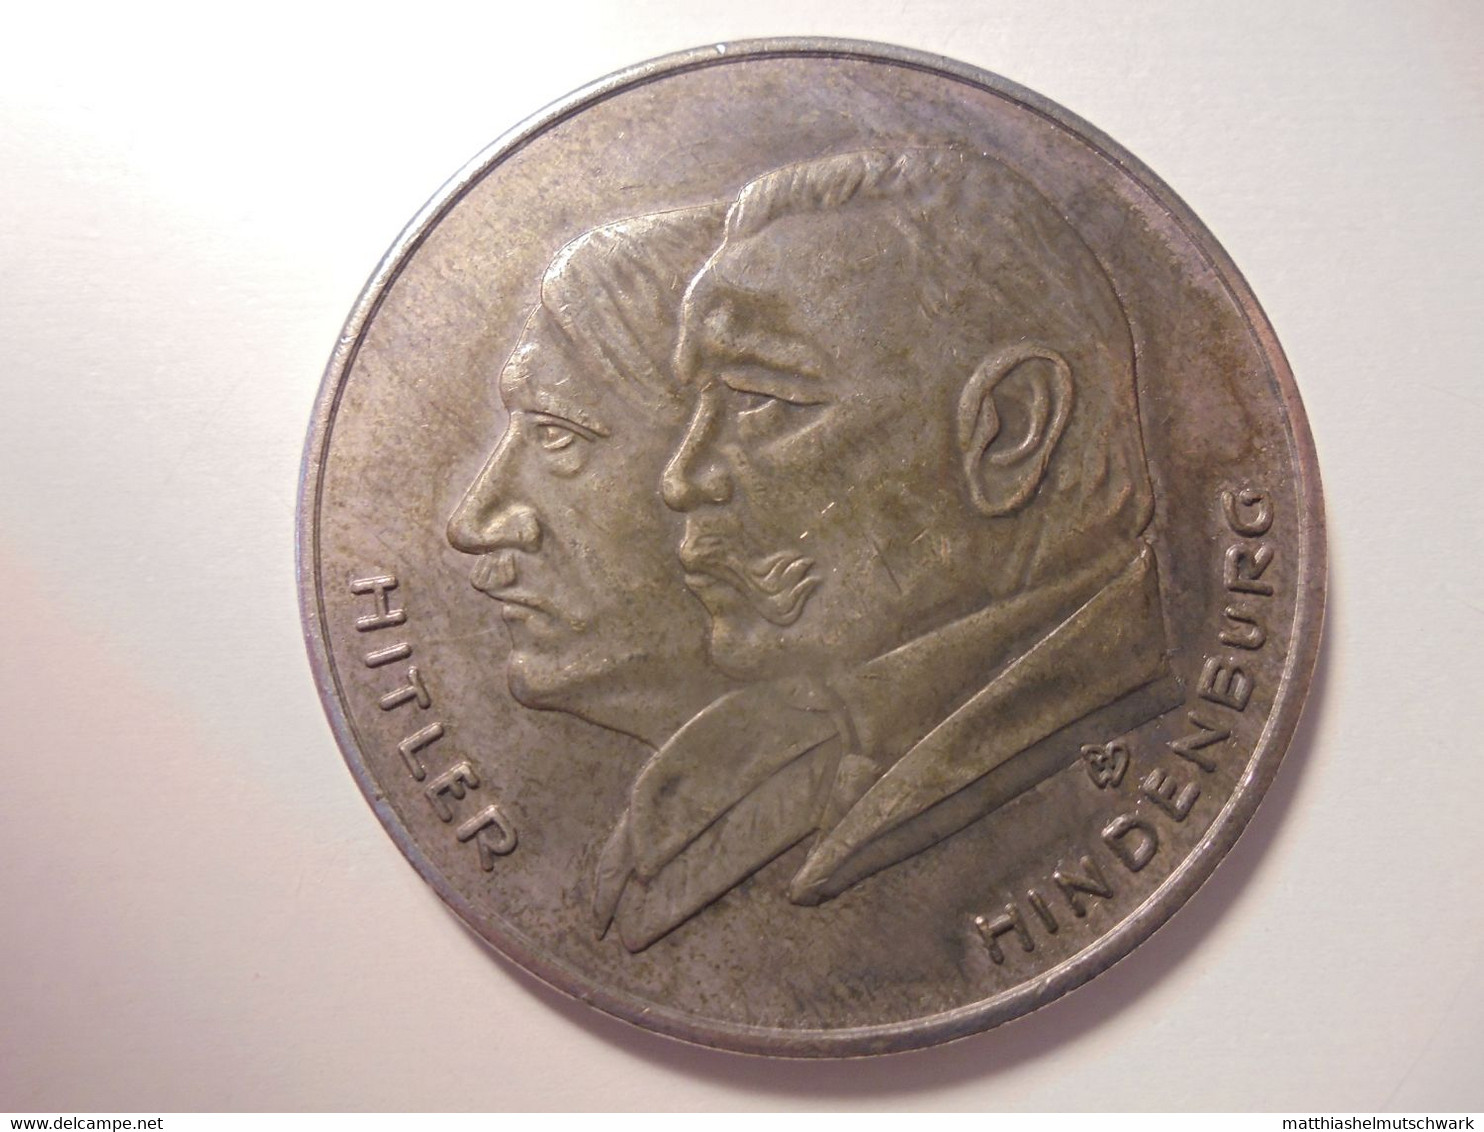 Medaille Auf „Deutschlands Erhebung 1933“ - Sehr Schöne Portraits Von Hitler Und Hindenburg Graveur/Designer: RW Medaill - Allemagne